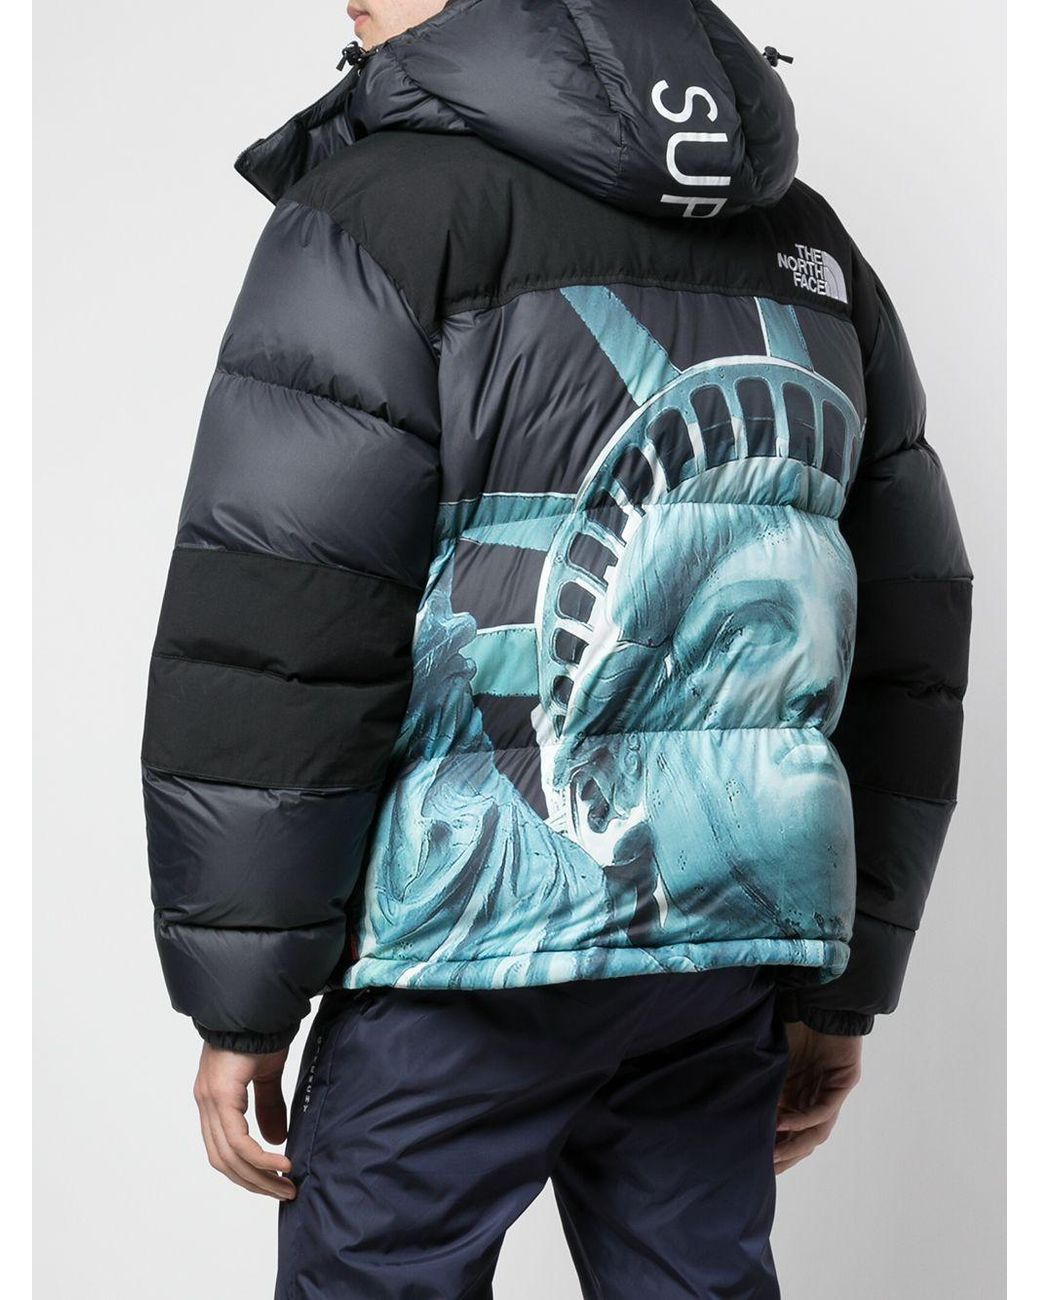 north face supreme jacket for sale